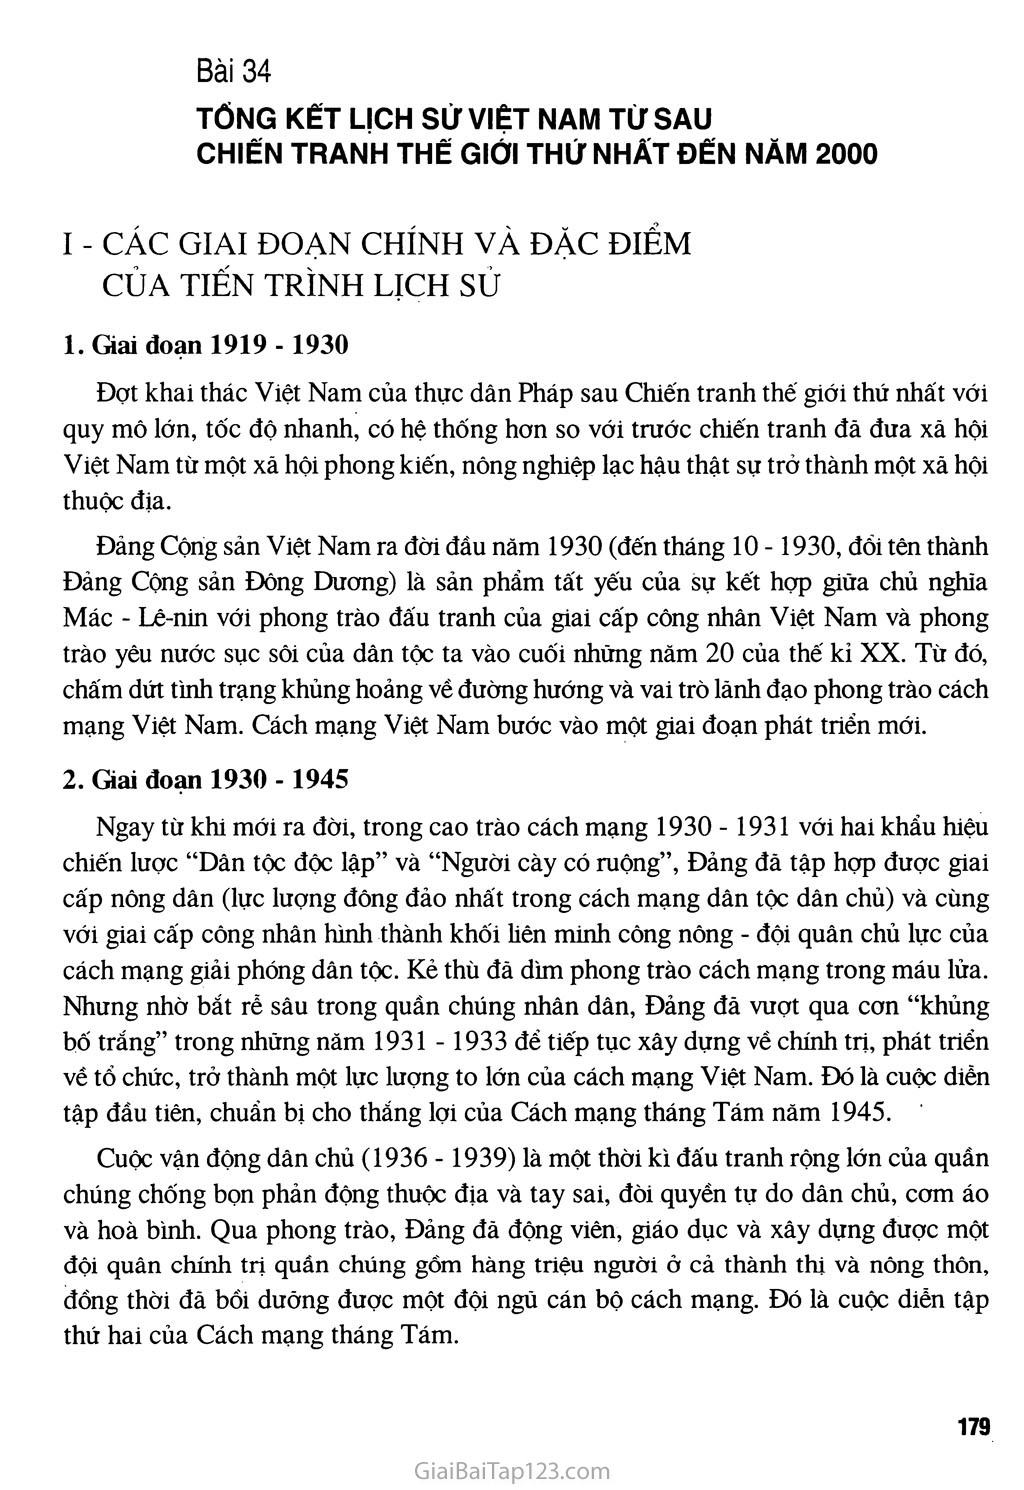 Bài 34 - Tổng kết lịch sử Việt Nam từ sau Chiến tranh thế giới thứ nhất đến năm 2000 trang 1